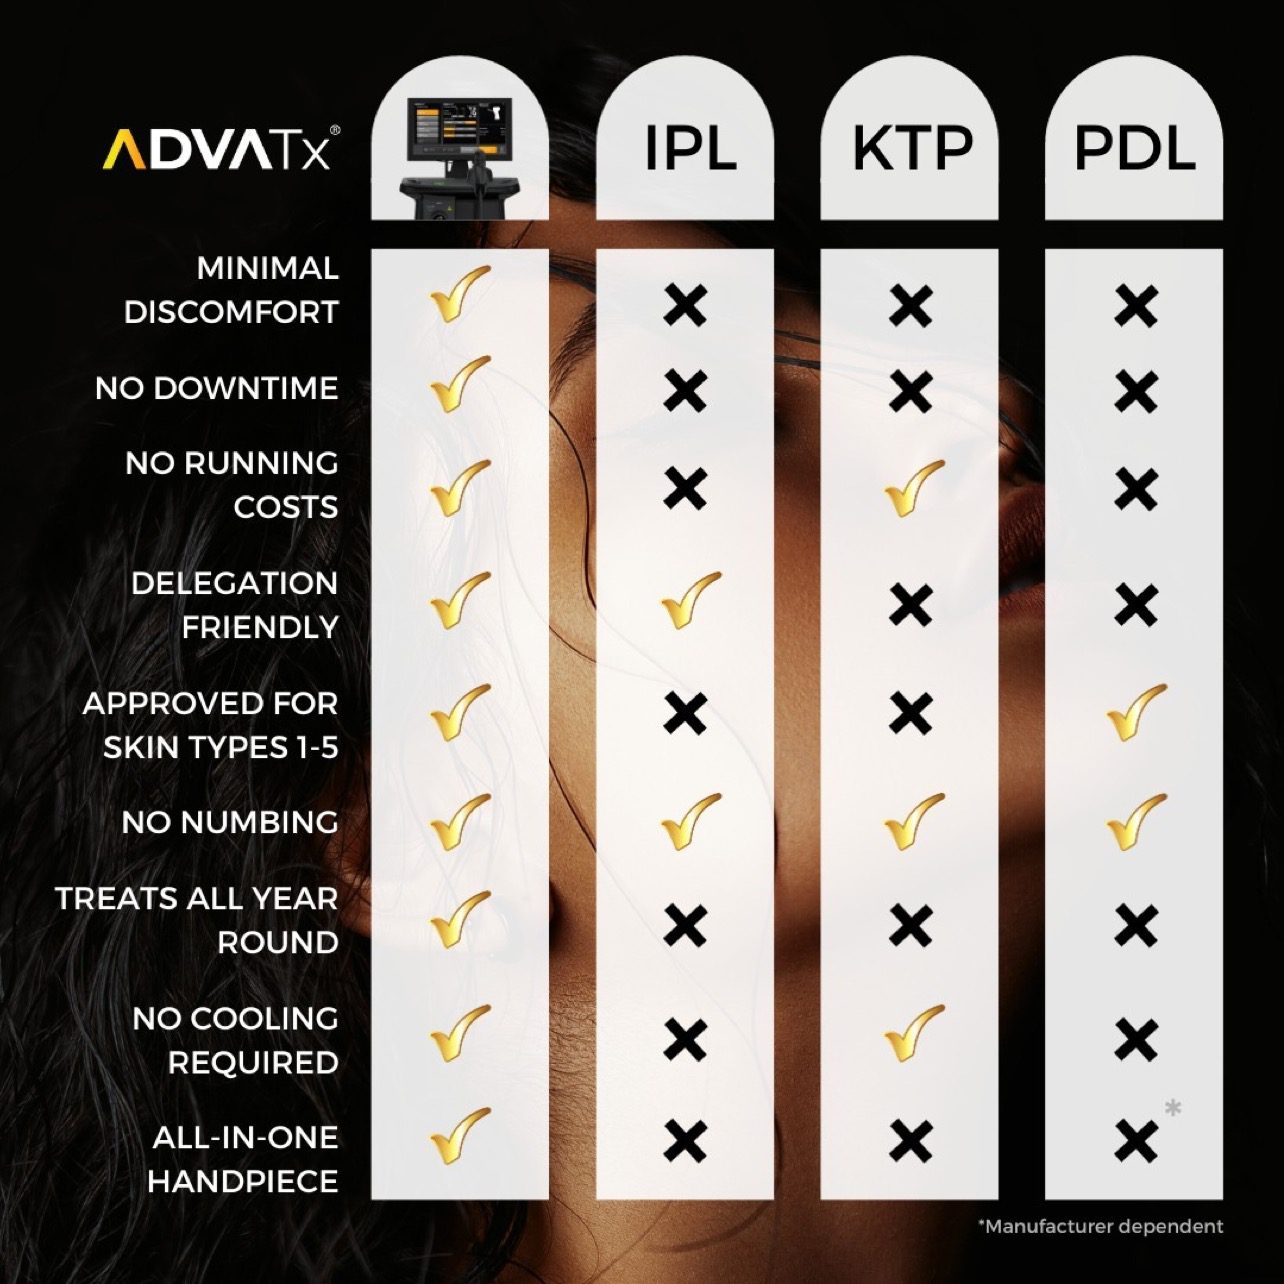 ADVATx compared to IPL Treatment